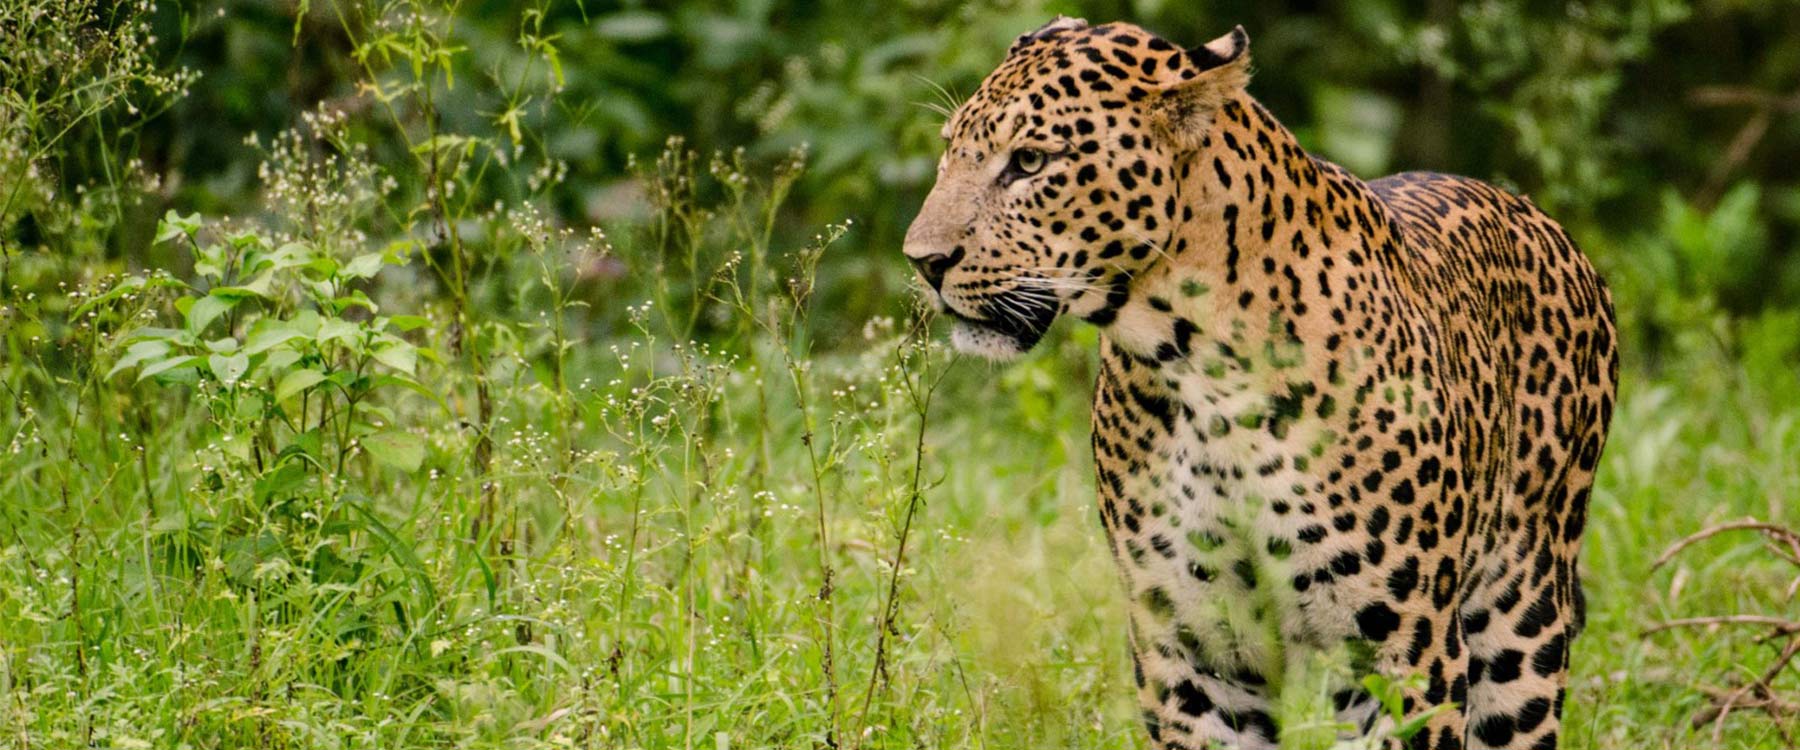 luxury tiger safari in india